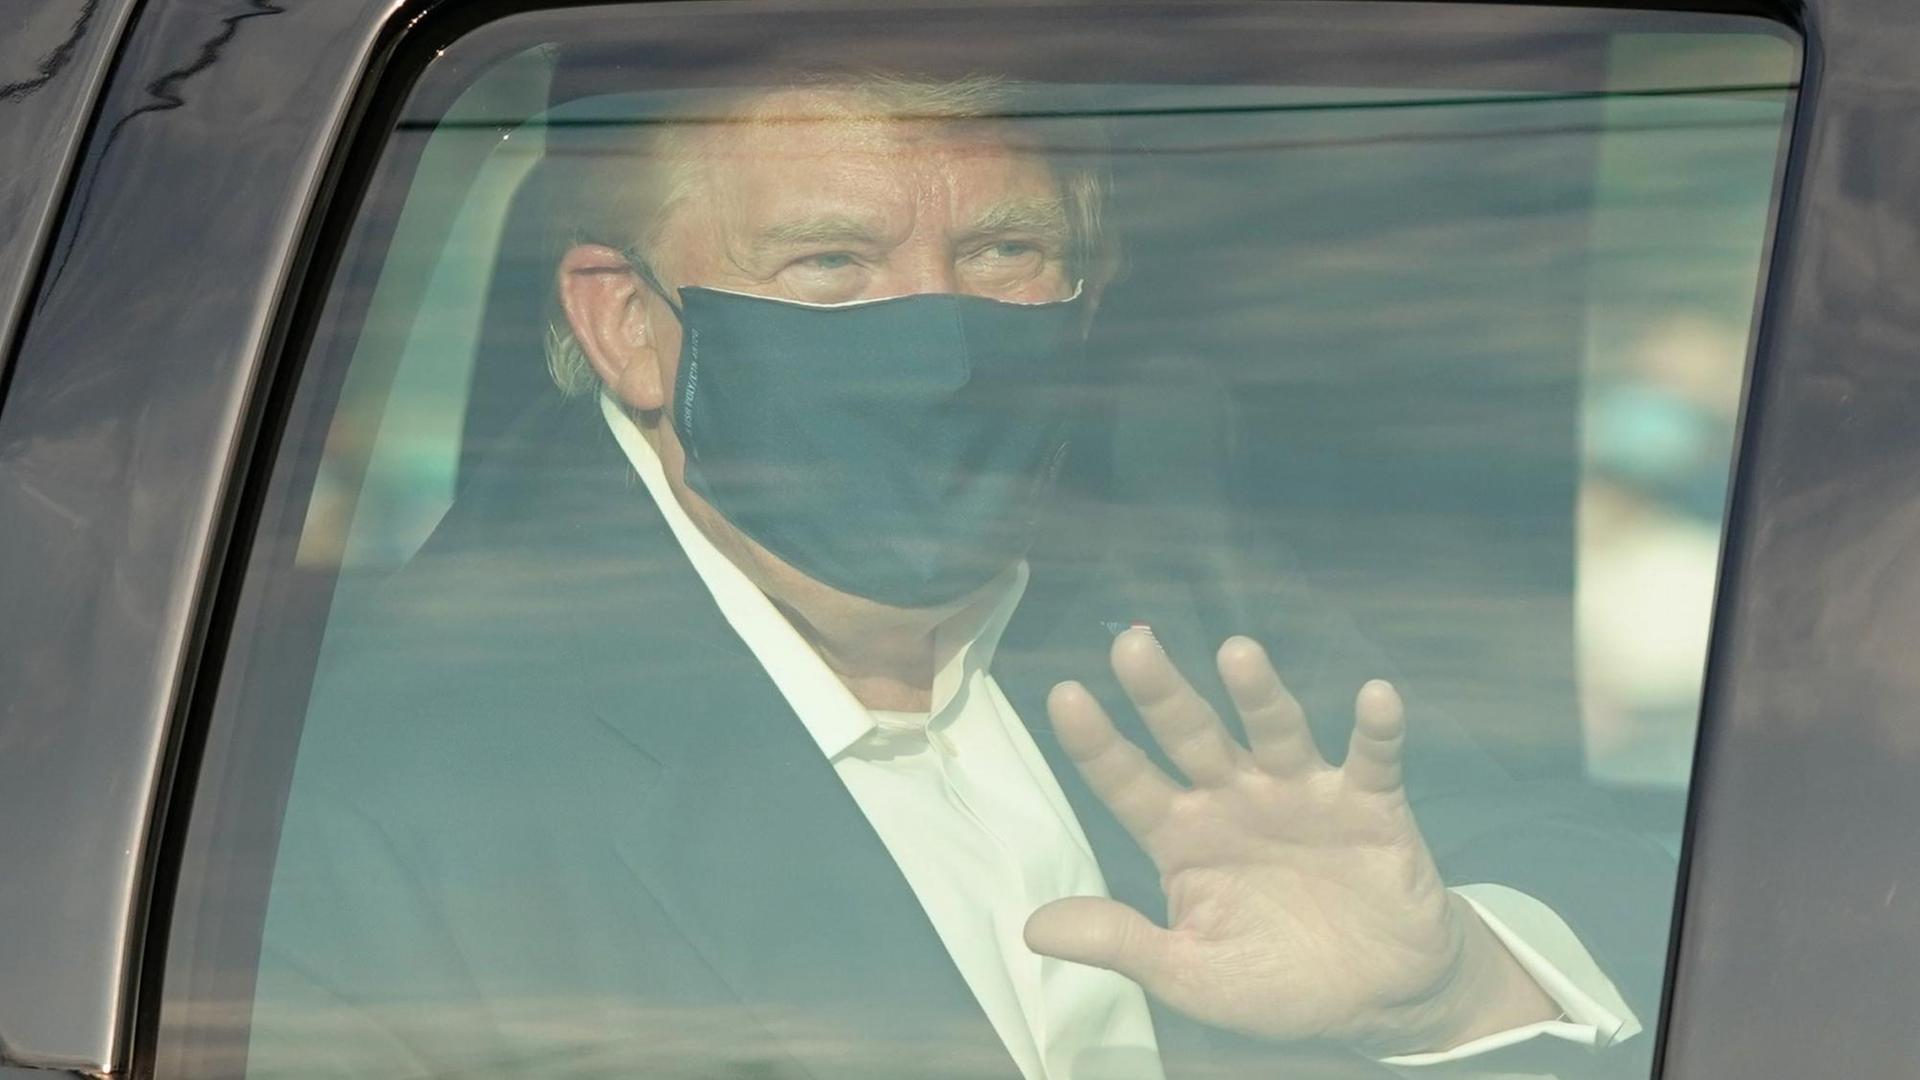 Präsident Trump mit Mundschutz winkt aus seiner Limousine.